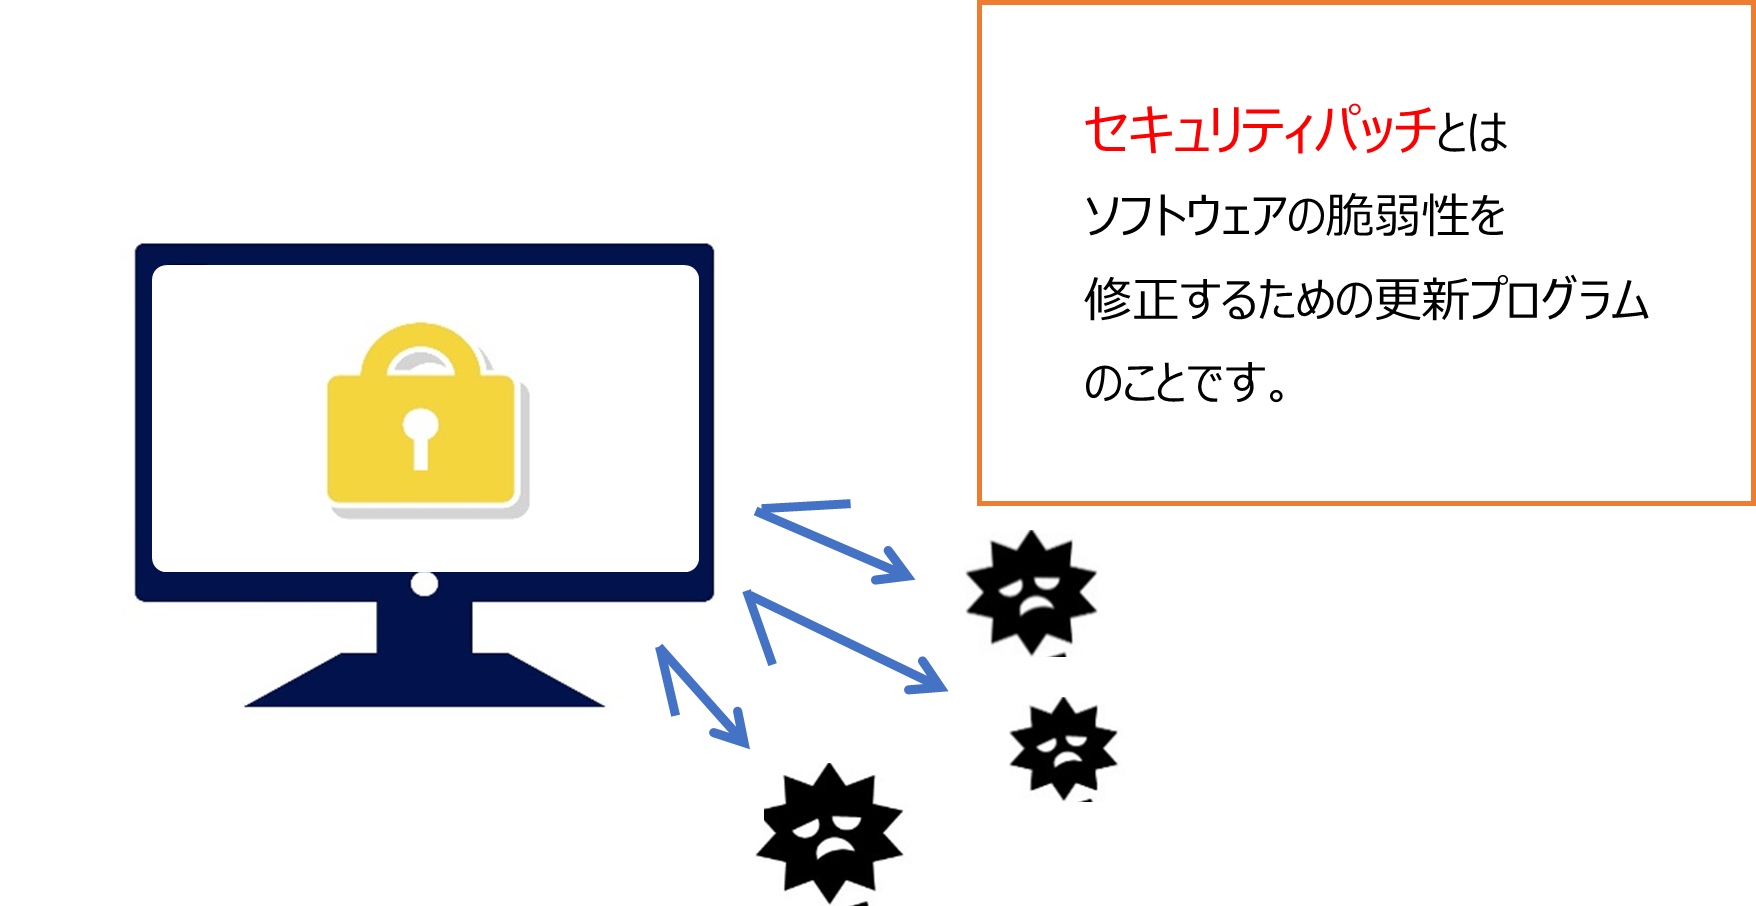 セキュリティパッチとはソフトウェアの脆弱性を修正するための更新プログラムのことです。